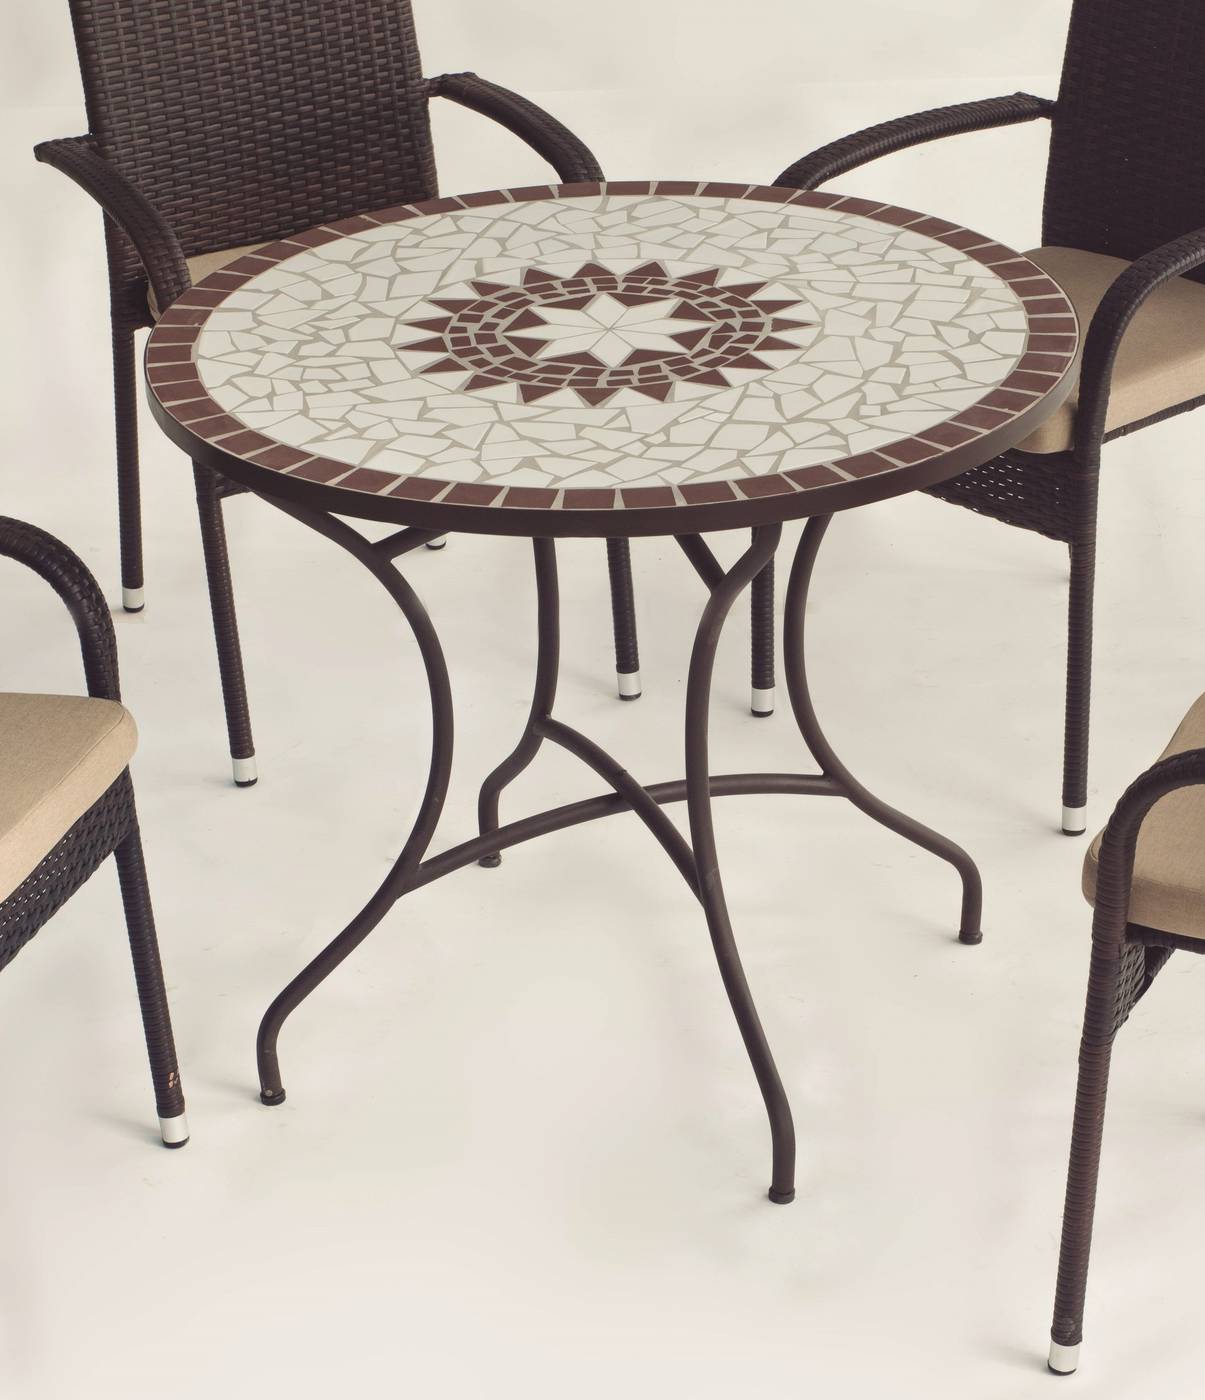 Conjunto Mosaico Estela90-Brasil - Mesa de forja color bronce, con tablero mosaico de 90 cm + 4 sillones apilables de wicker sintético.